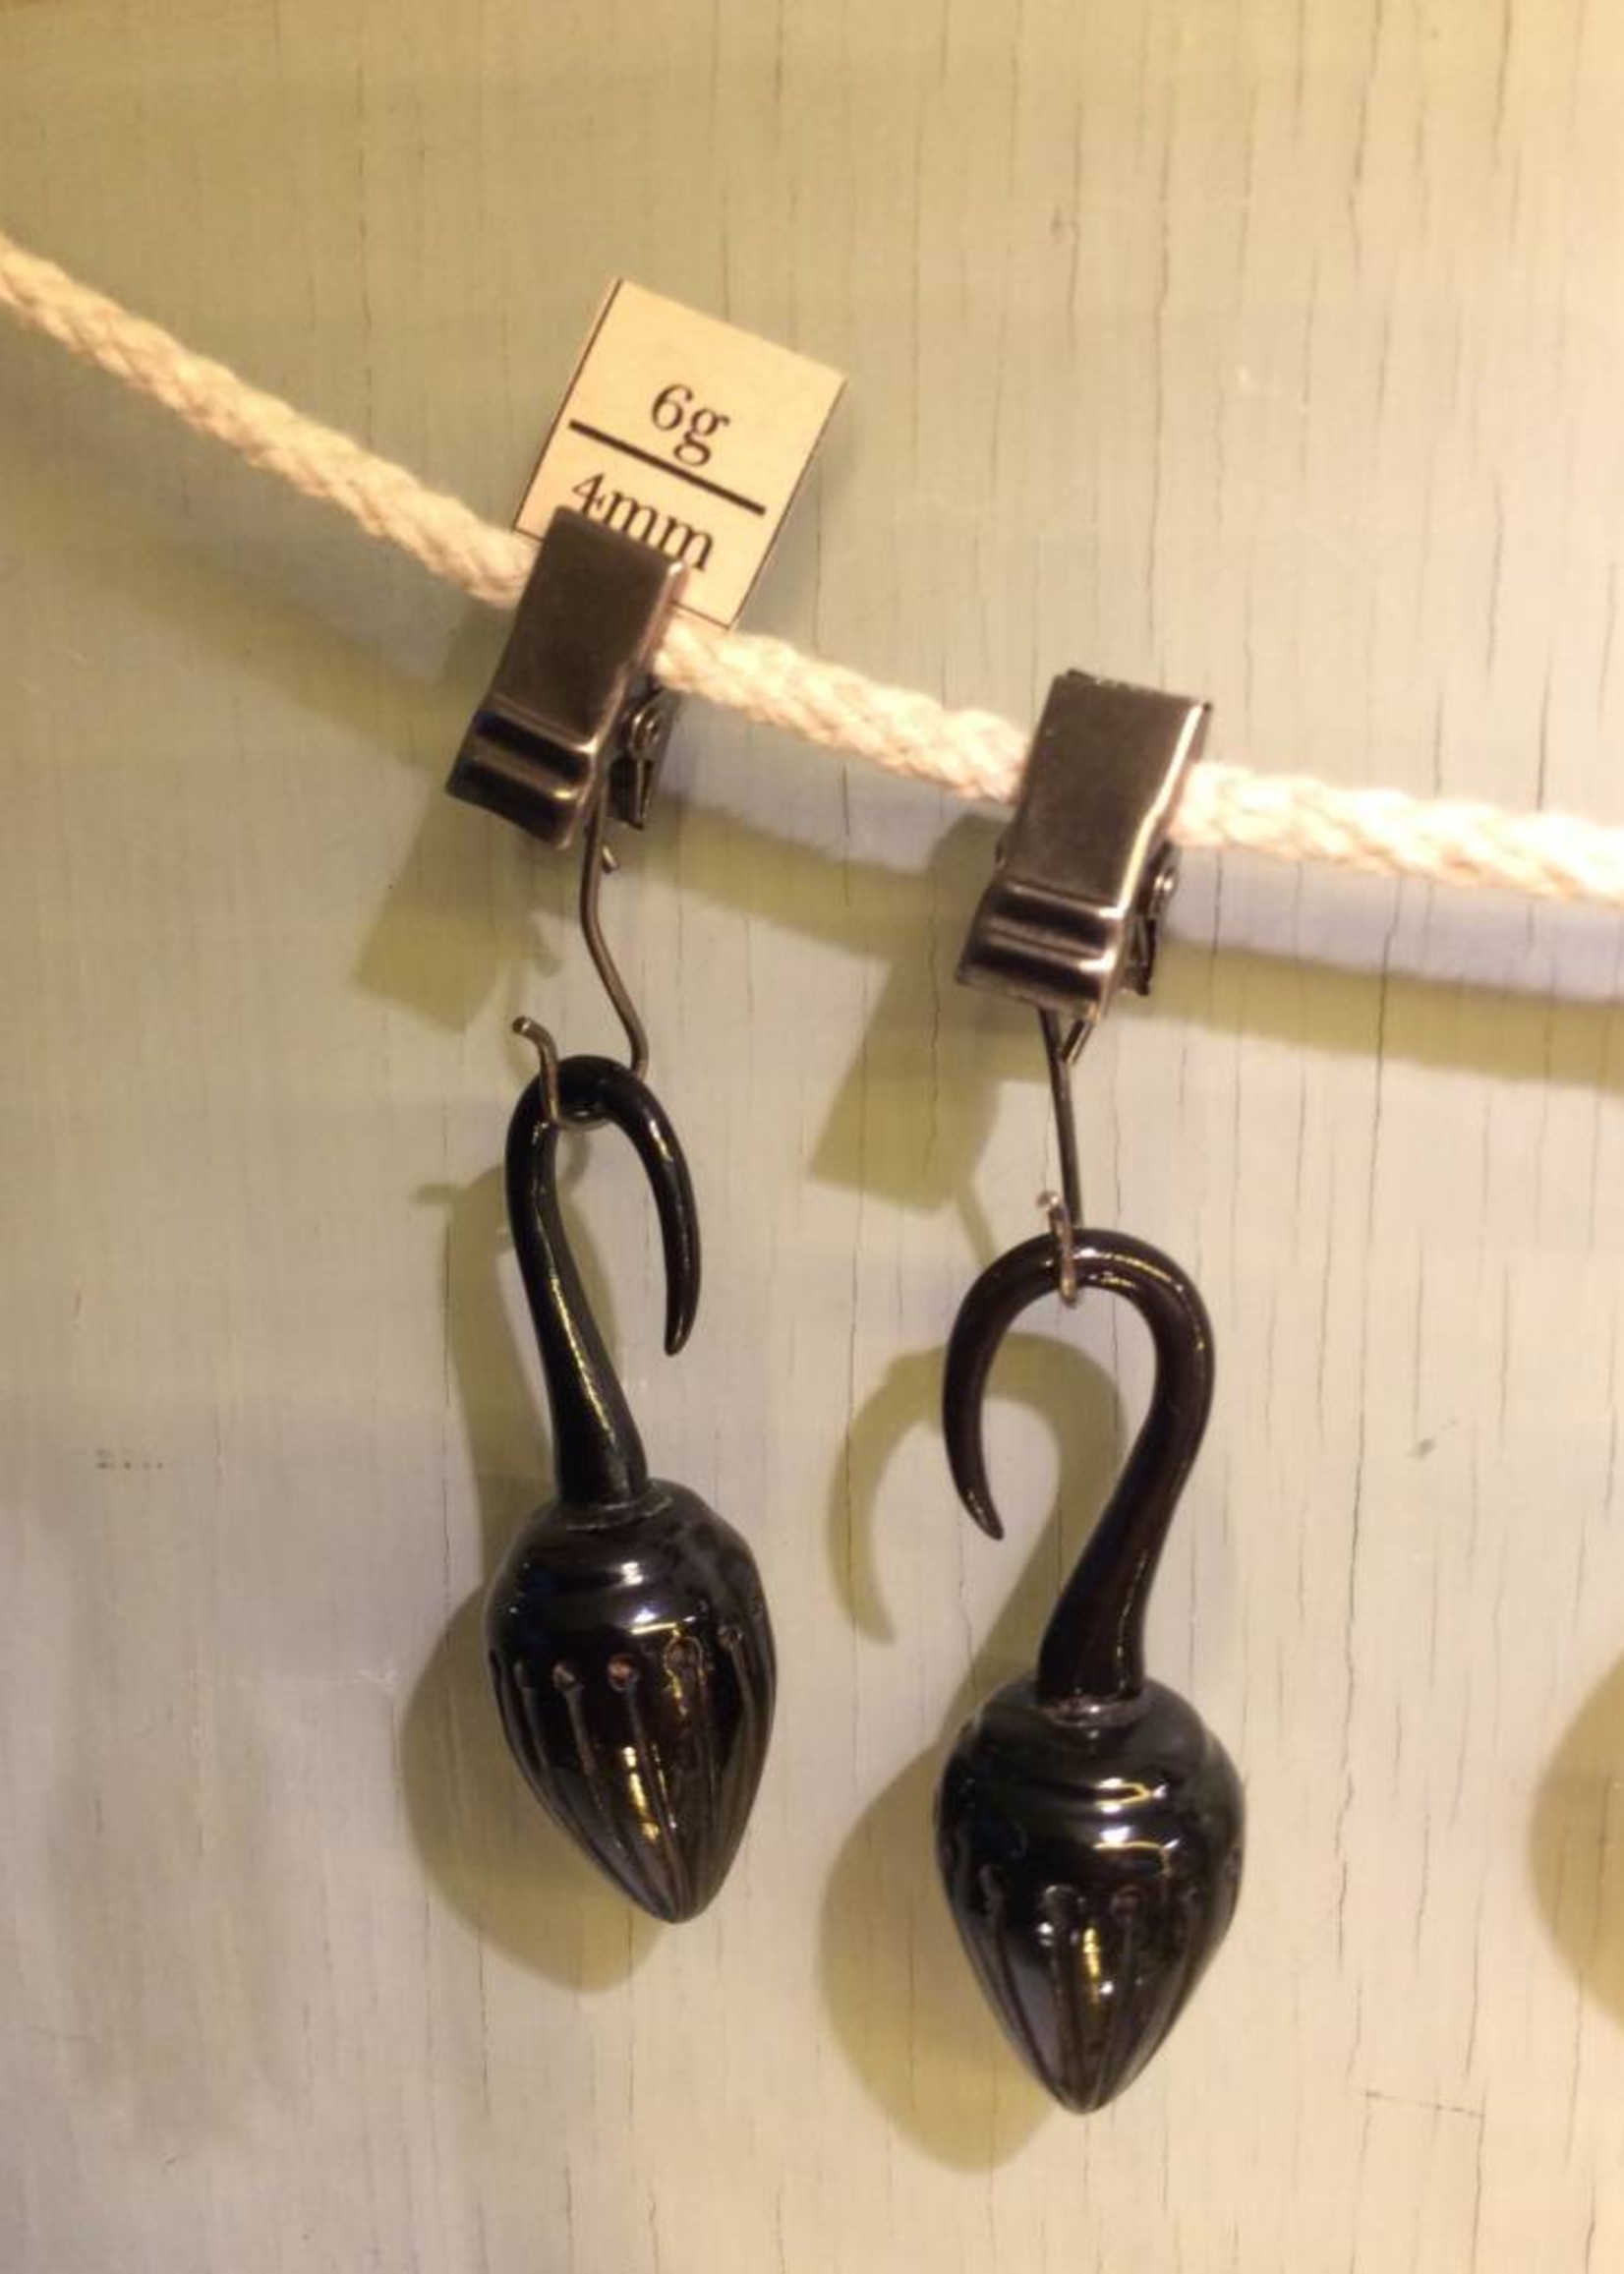 6g Horn Pendulum Hangers